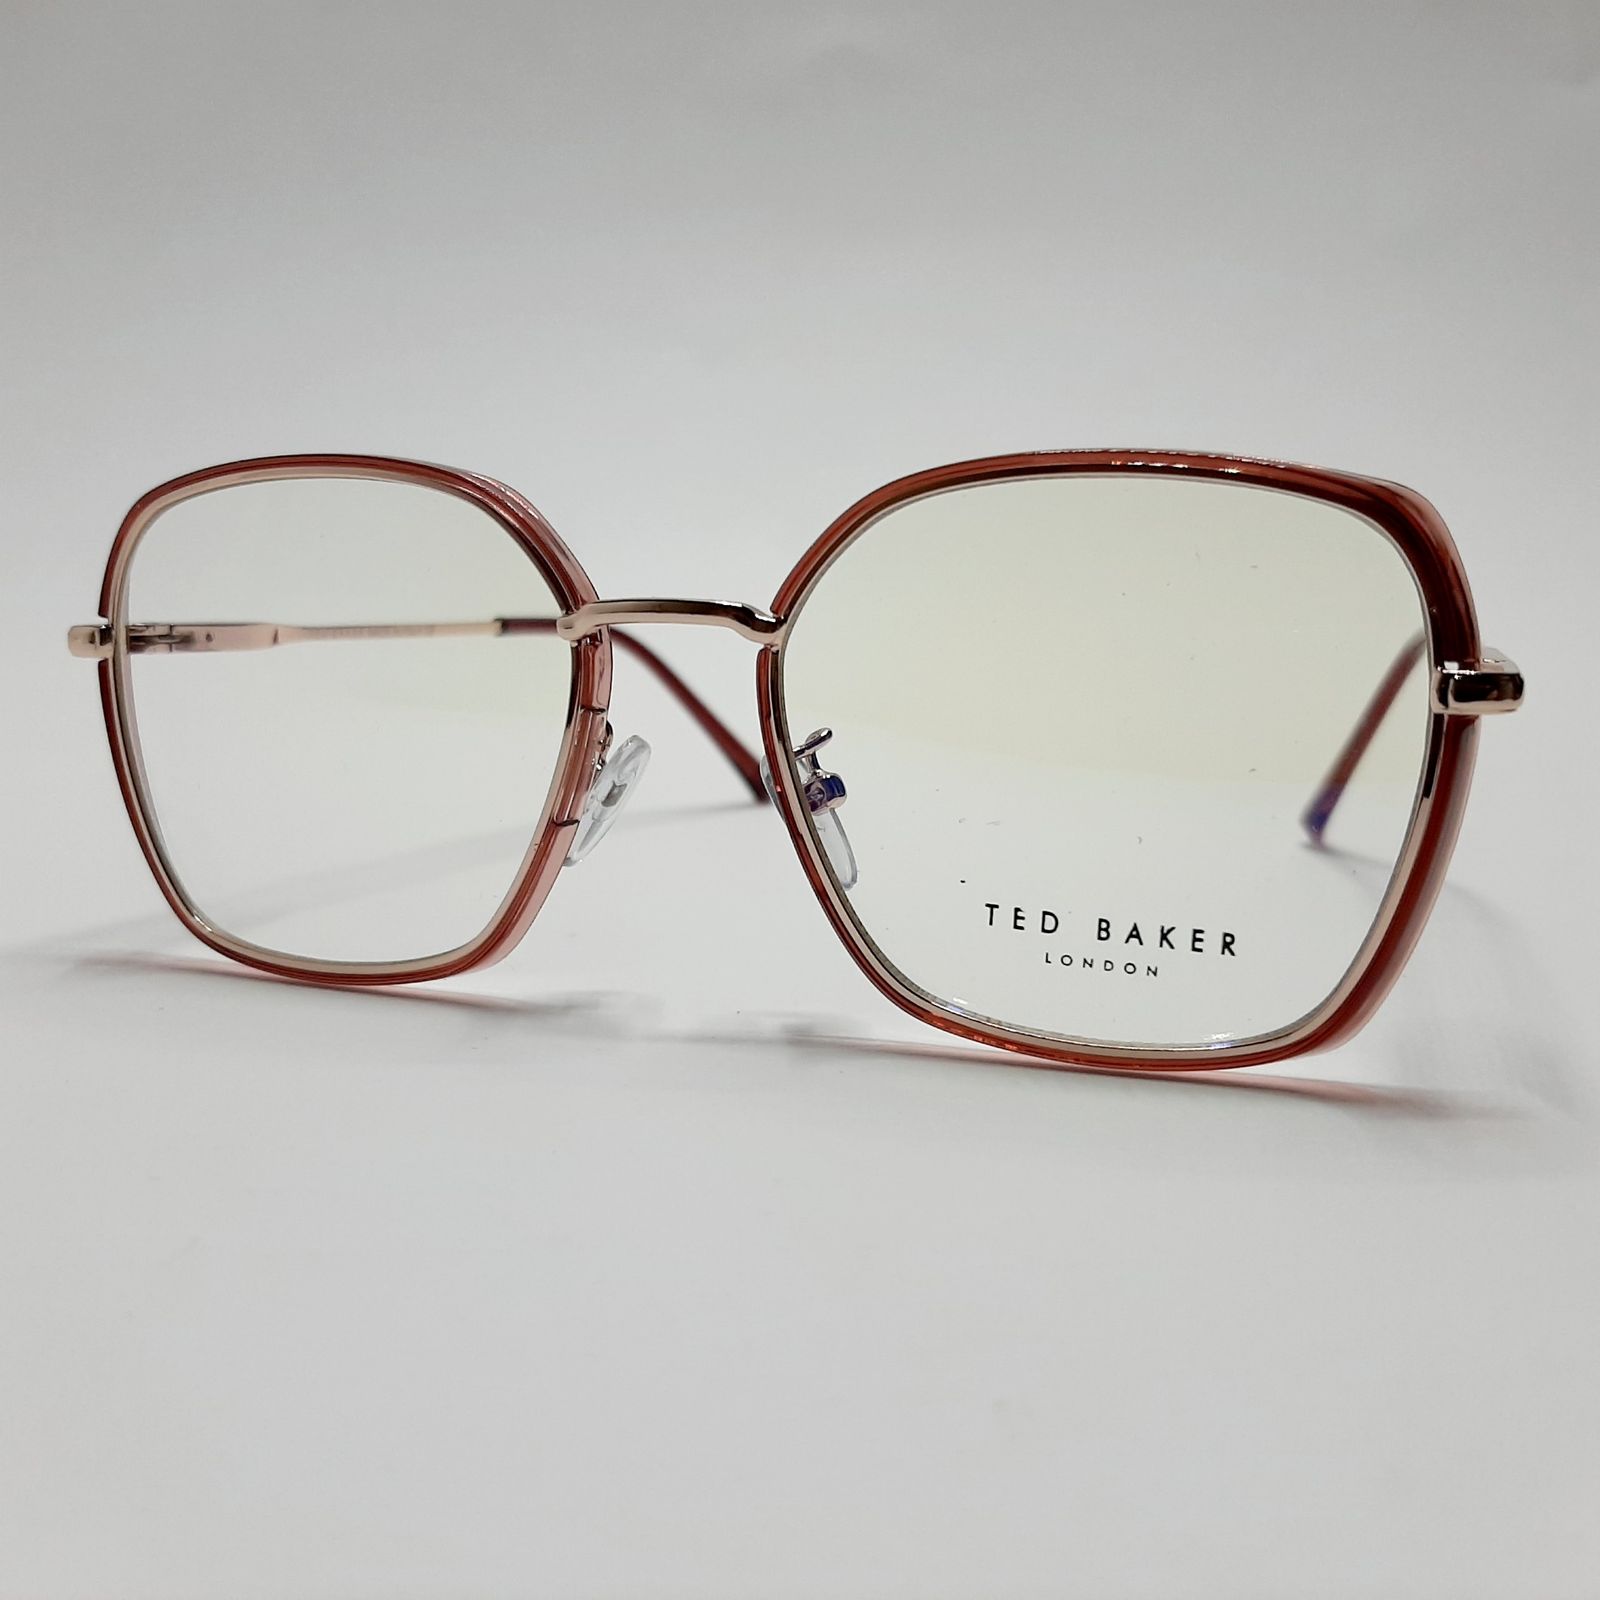 فریم عینک طبی تد بیکر مدل 95583c2 -  - 3